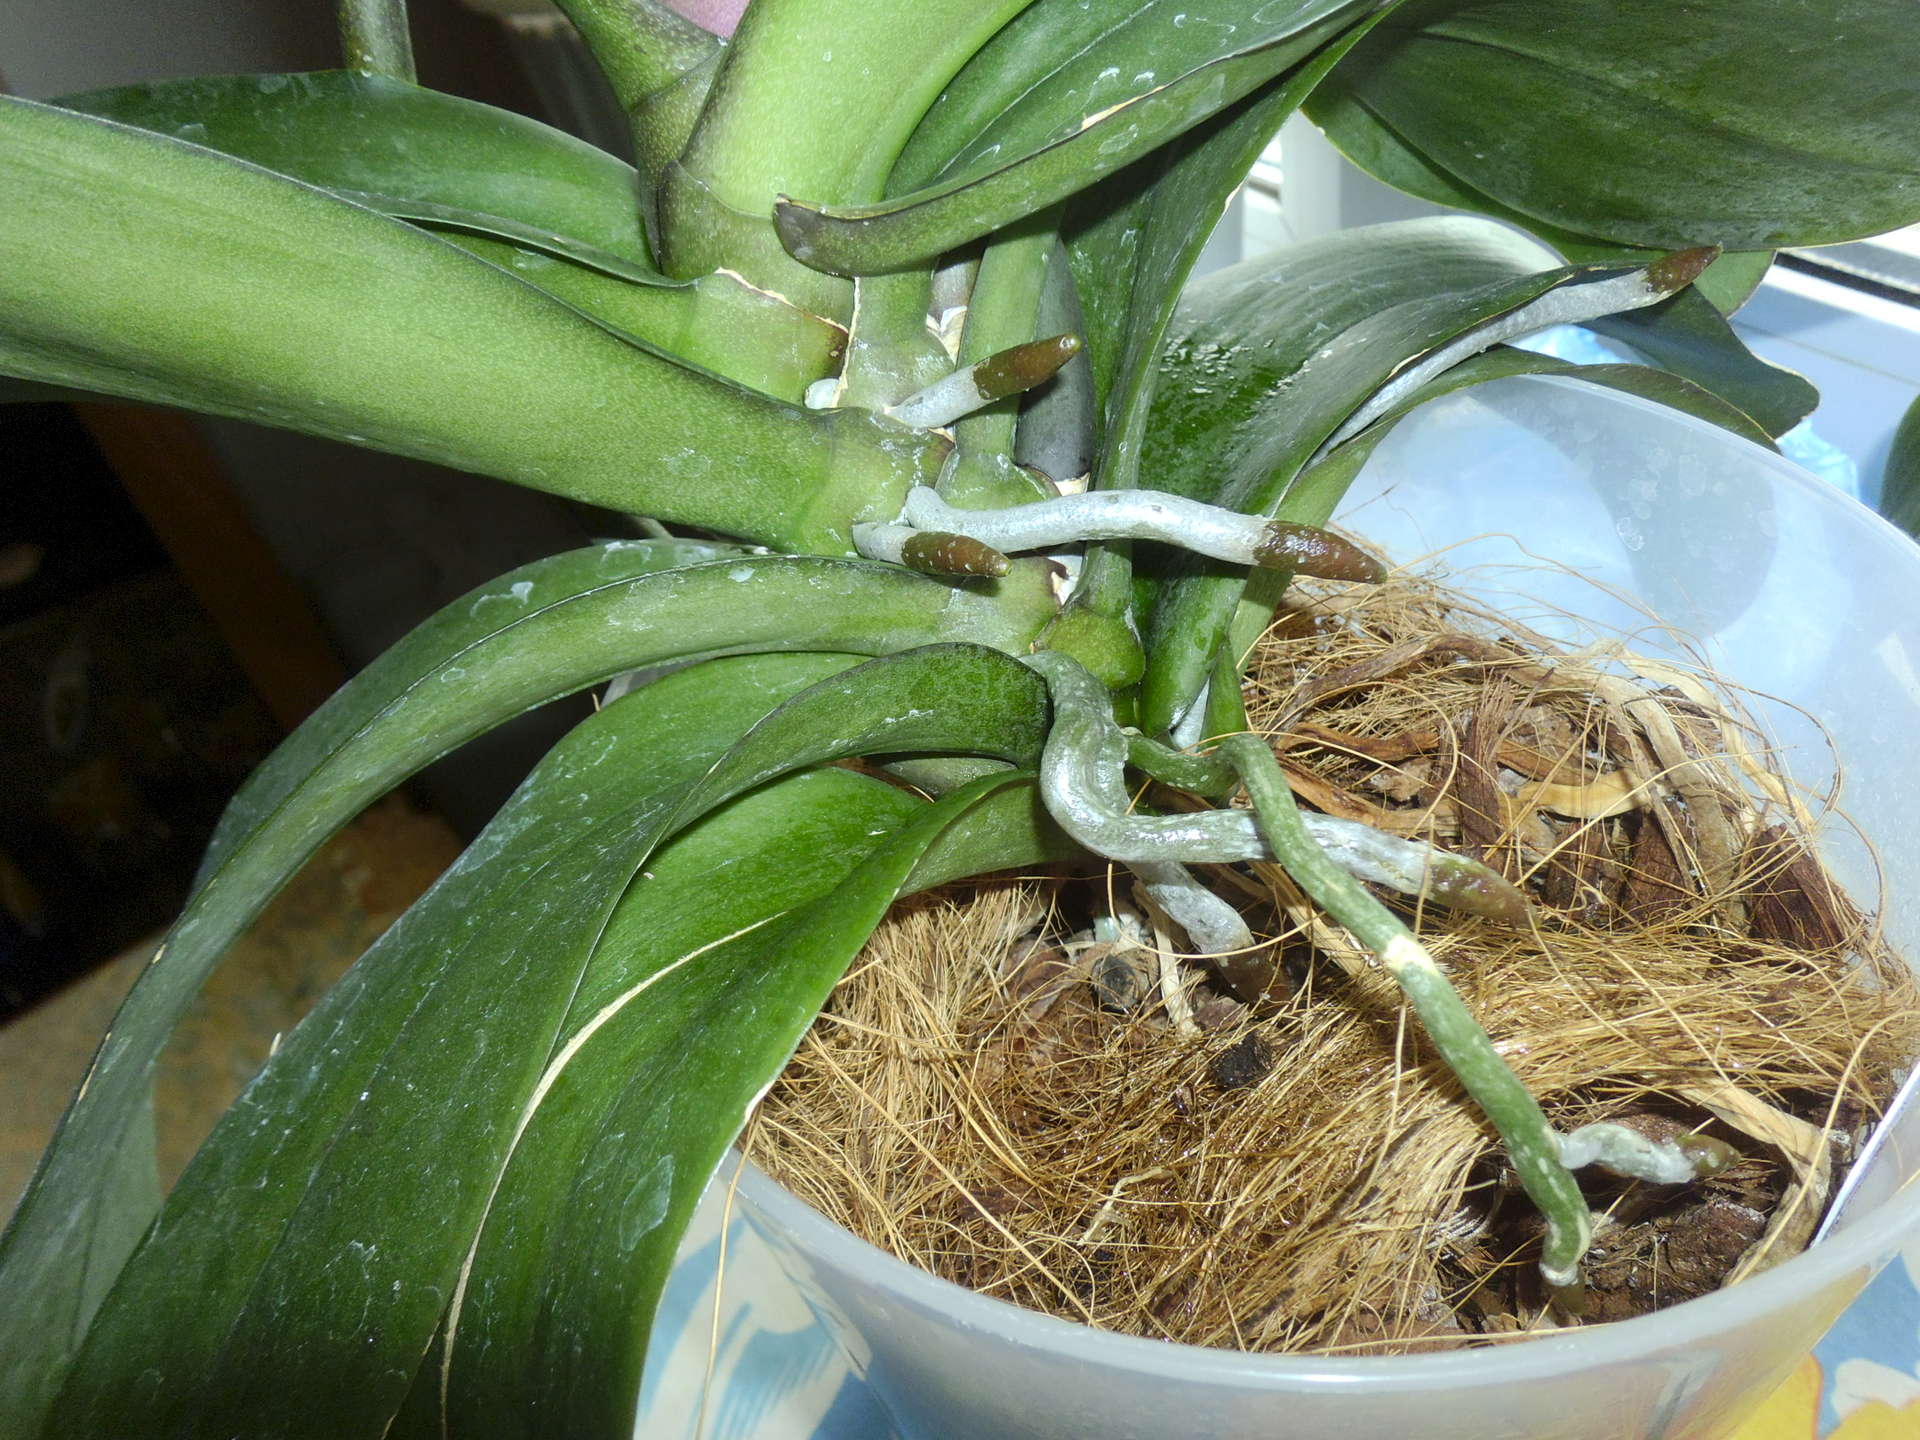 Как цветут орхидеи в домашних условиях, что влияет на процесс, что делать, чтобы растения зацвели, можно ли стимулировать, какие применять препараты?